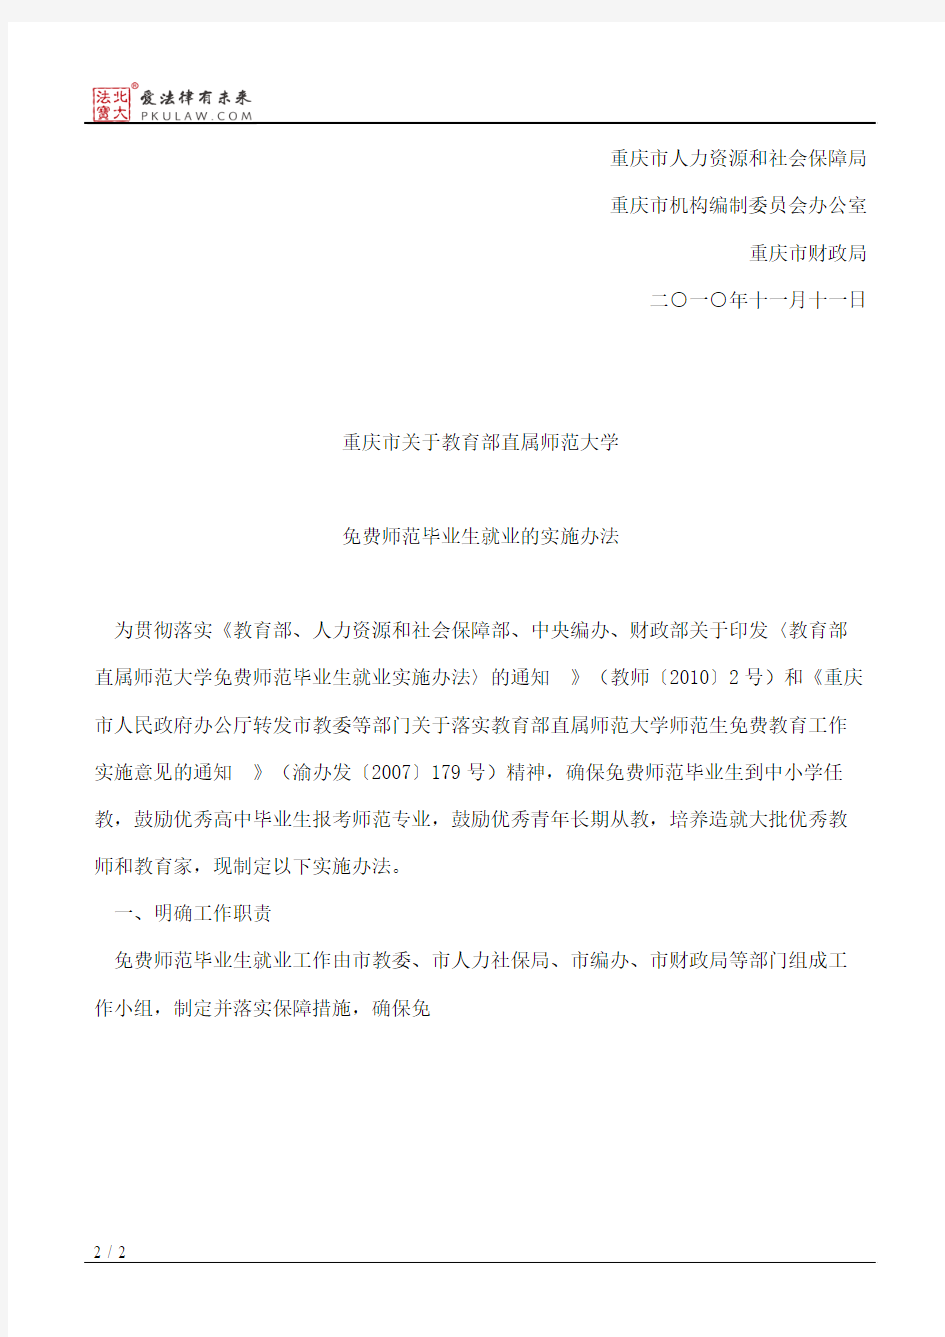 重庆市教育委员会、重庆市人力资源和社会保障局、重庆市机构编制